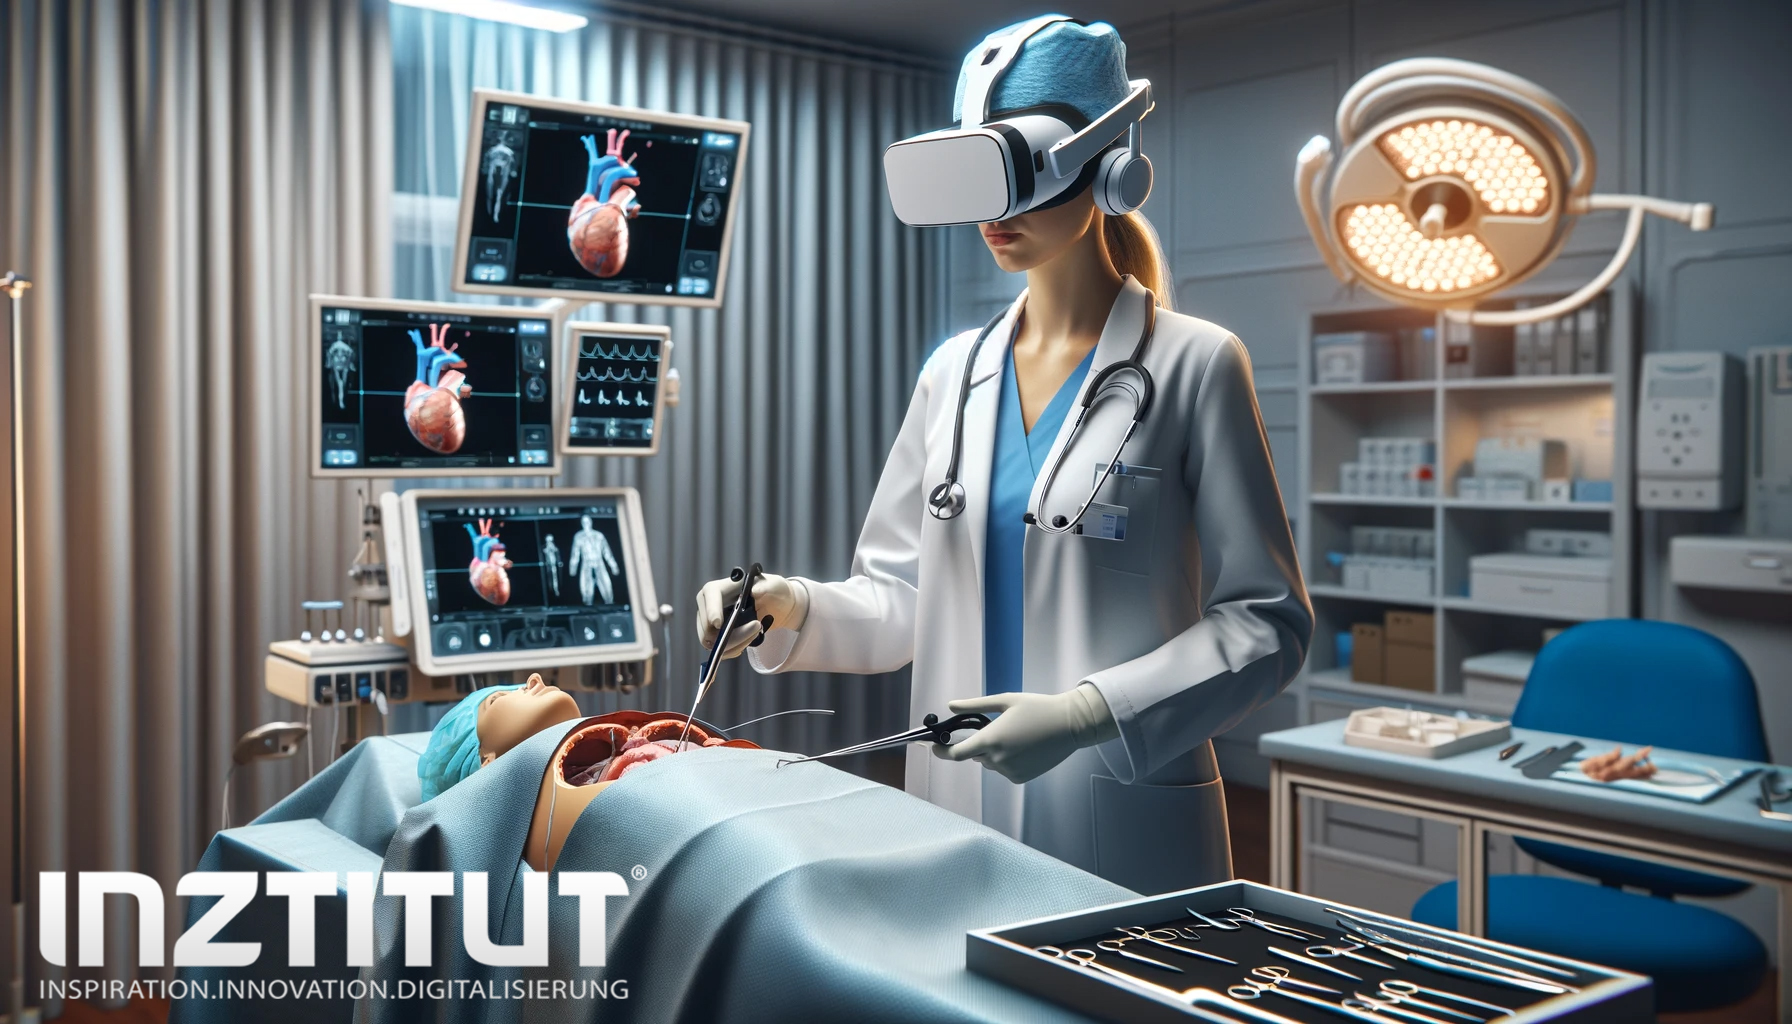 Immersive Technologie für medizinische Therapie und Training in der Medizin - Die Ärztin Sie befindet sich in einem Simulationssaal, trägt ein VR-Headset und nutzt fortschrittliche medizinische Simulationsausrüstung.